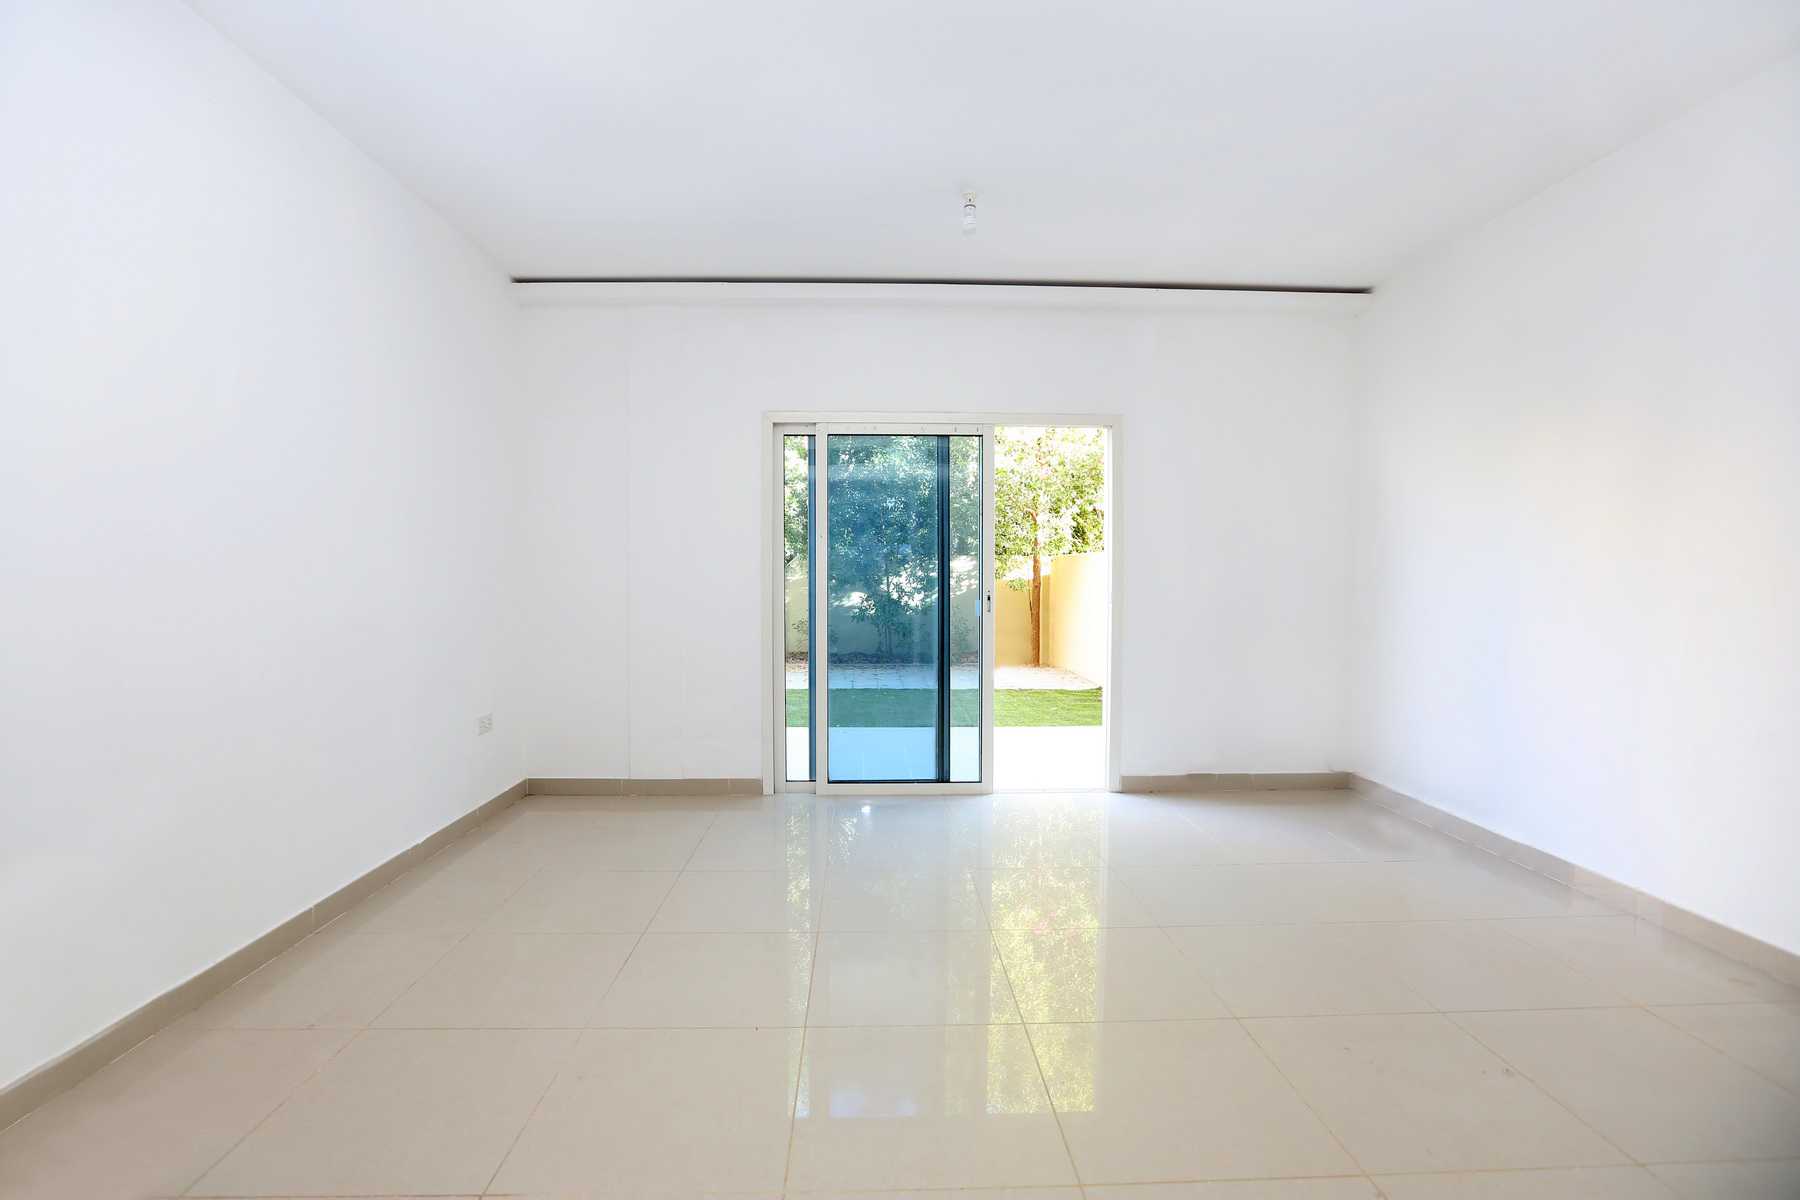 Internal Photo of 2 Bedroom Villa in Al Reef Villas  Al Reef Abu Dhabi UAE 170.2 sq.m 1832 sq.ft (6).jpg